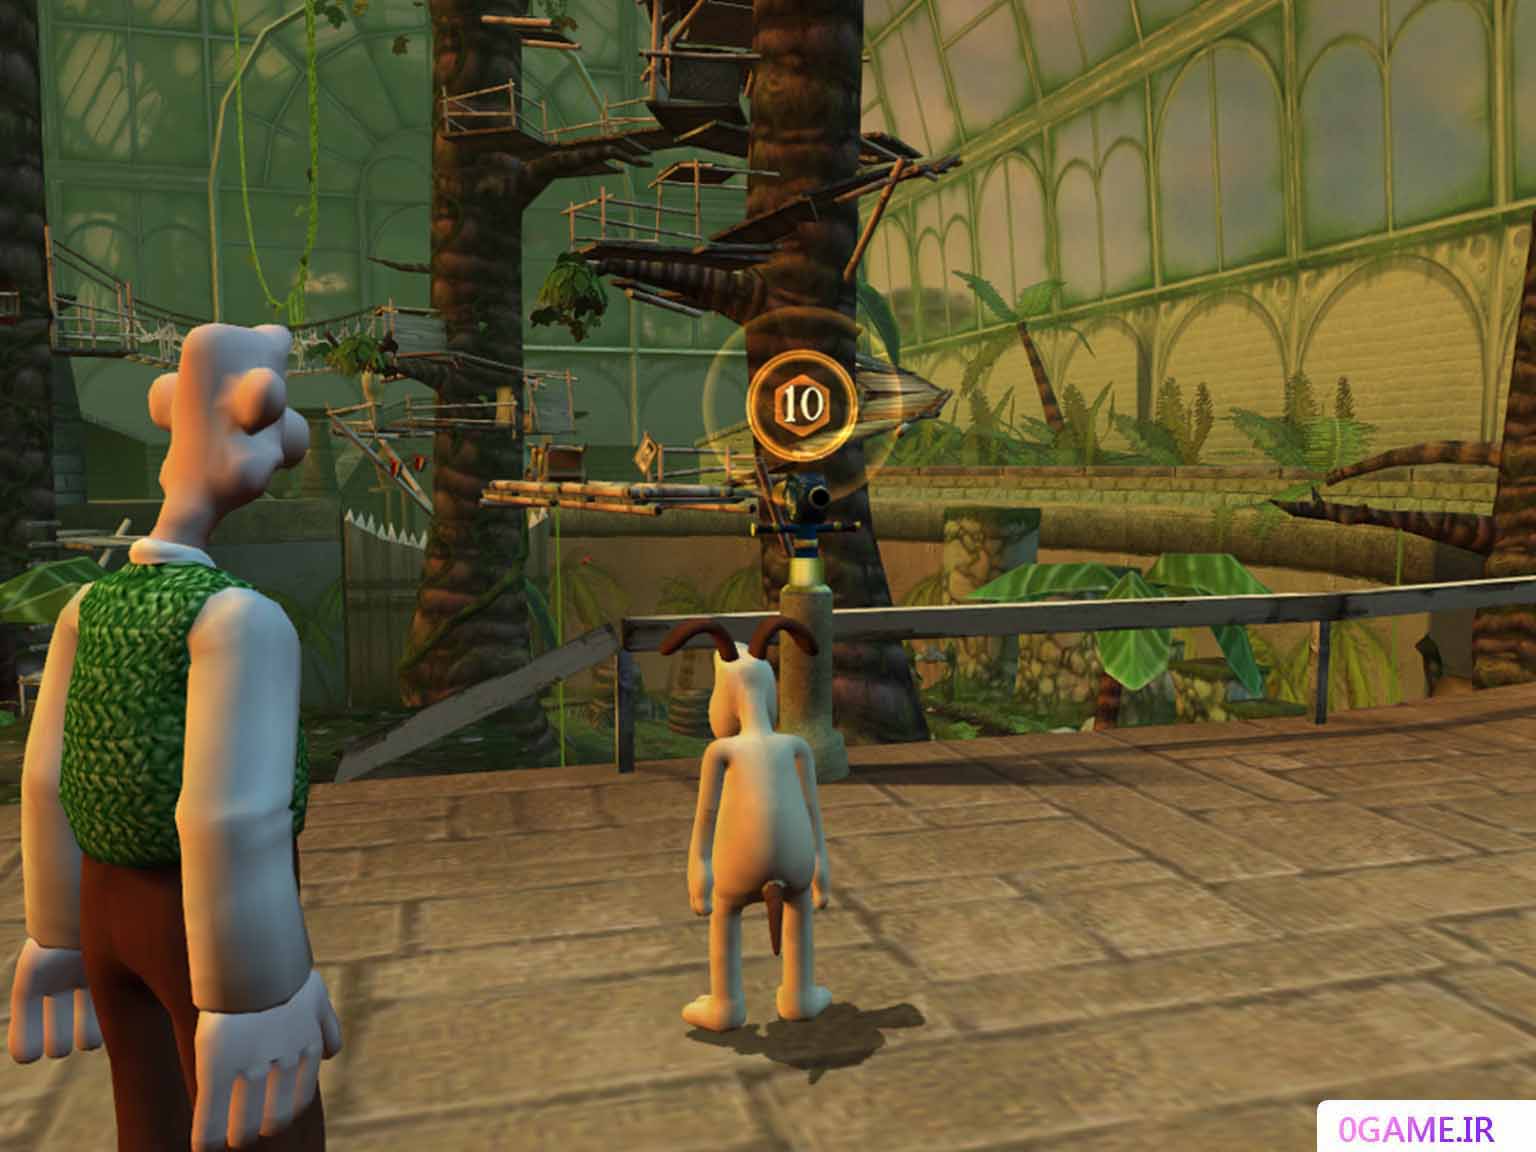 دانلود بازی والاس و گرومیت در پروژه باغ وحش (Wallace & Gromit in Project Zoo) نسخه کامل برای کامپیوتر